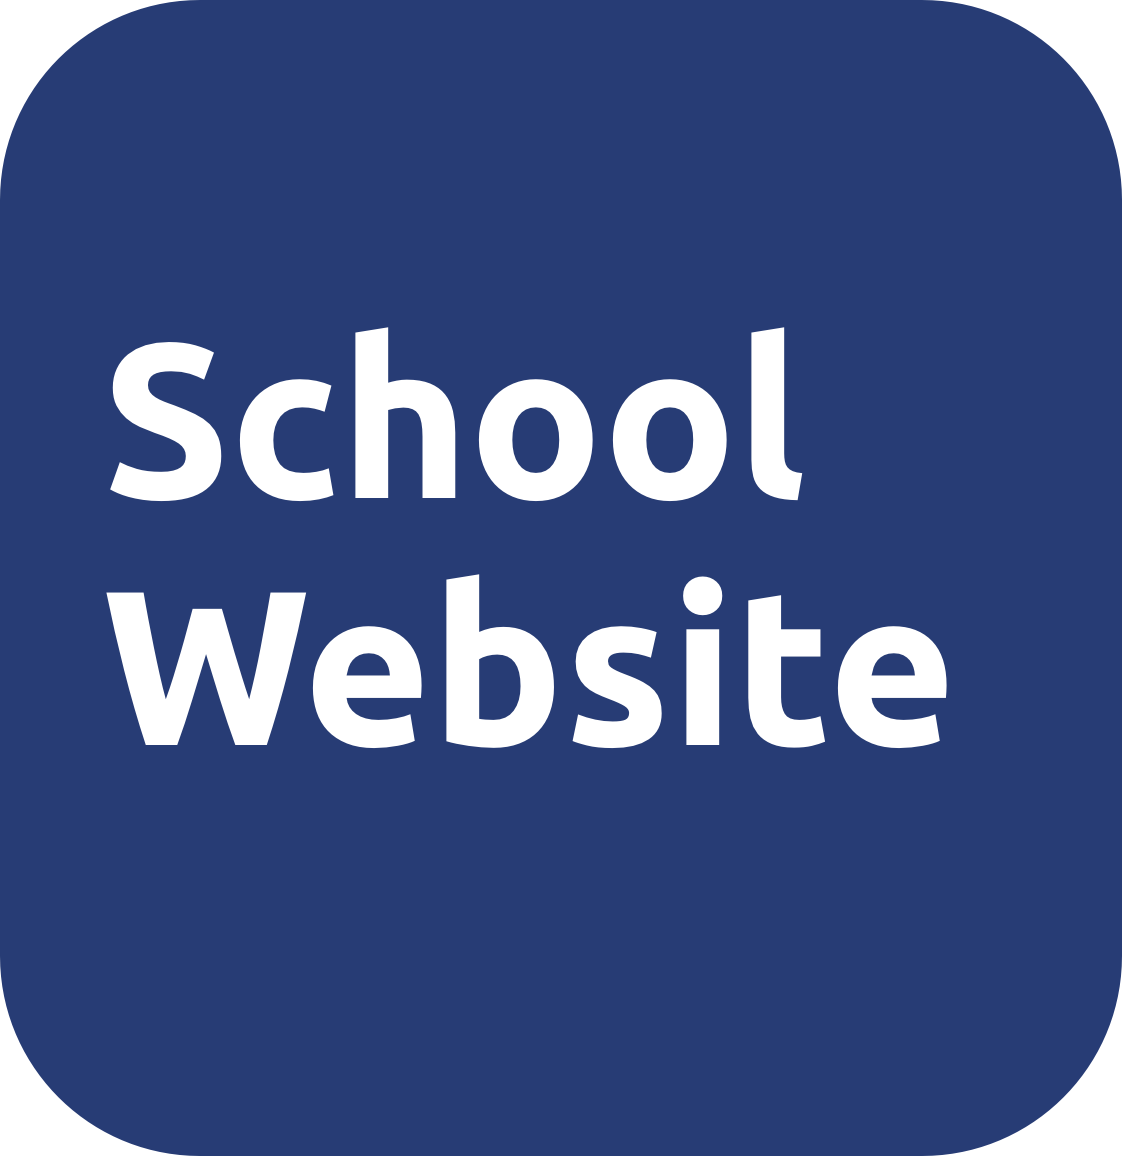 School Websites